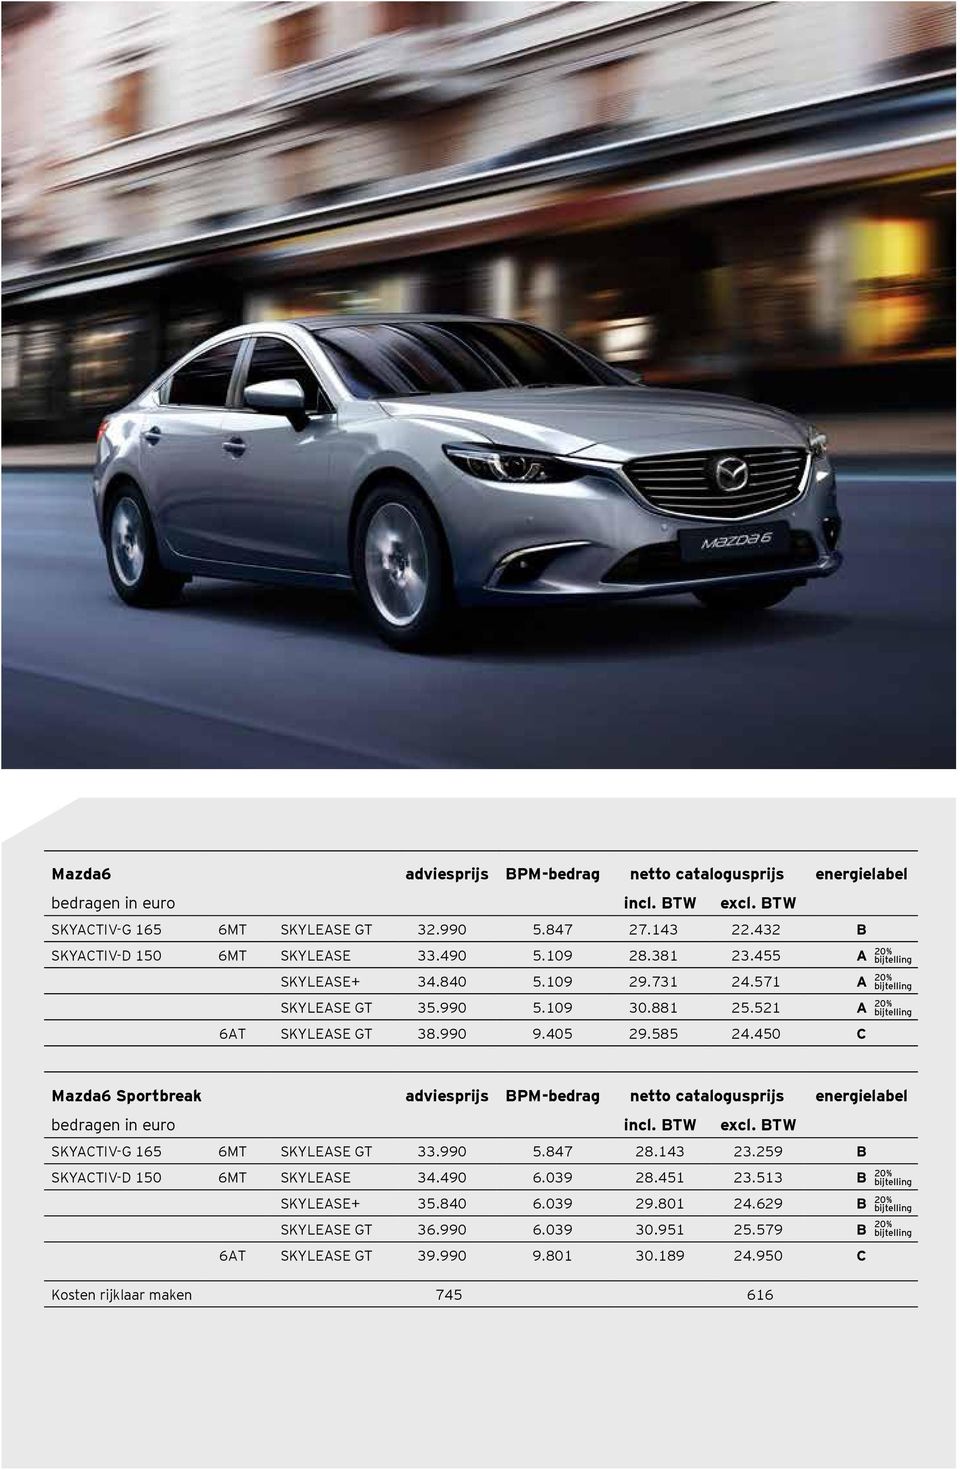 450 C Mazda6 Sportbreak adviesprijs BPM-bedrag netto catalogusprijs energielabel bedragen in euro incl. BTW excl. BTW SKYACTIV-G 165 6MT SKYLEASE GT 33.990 5.847 28.143 23.